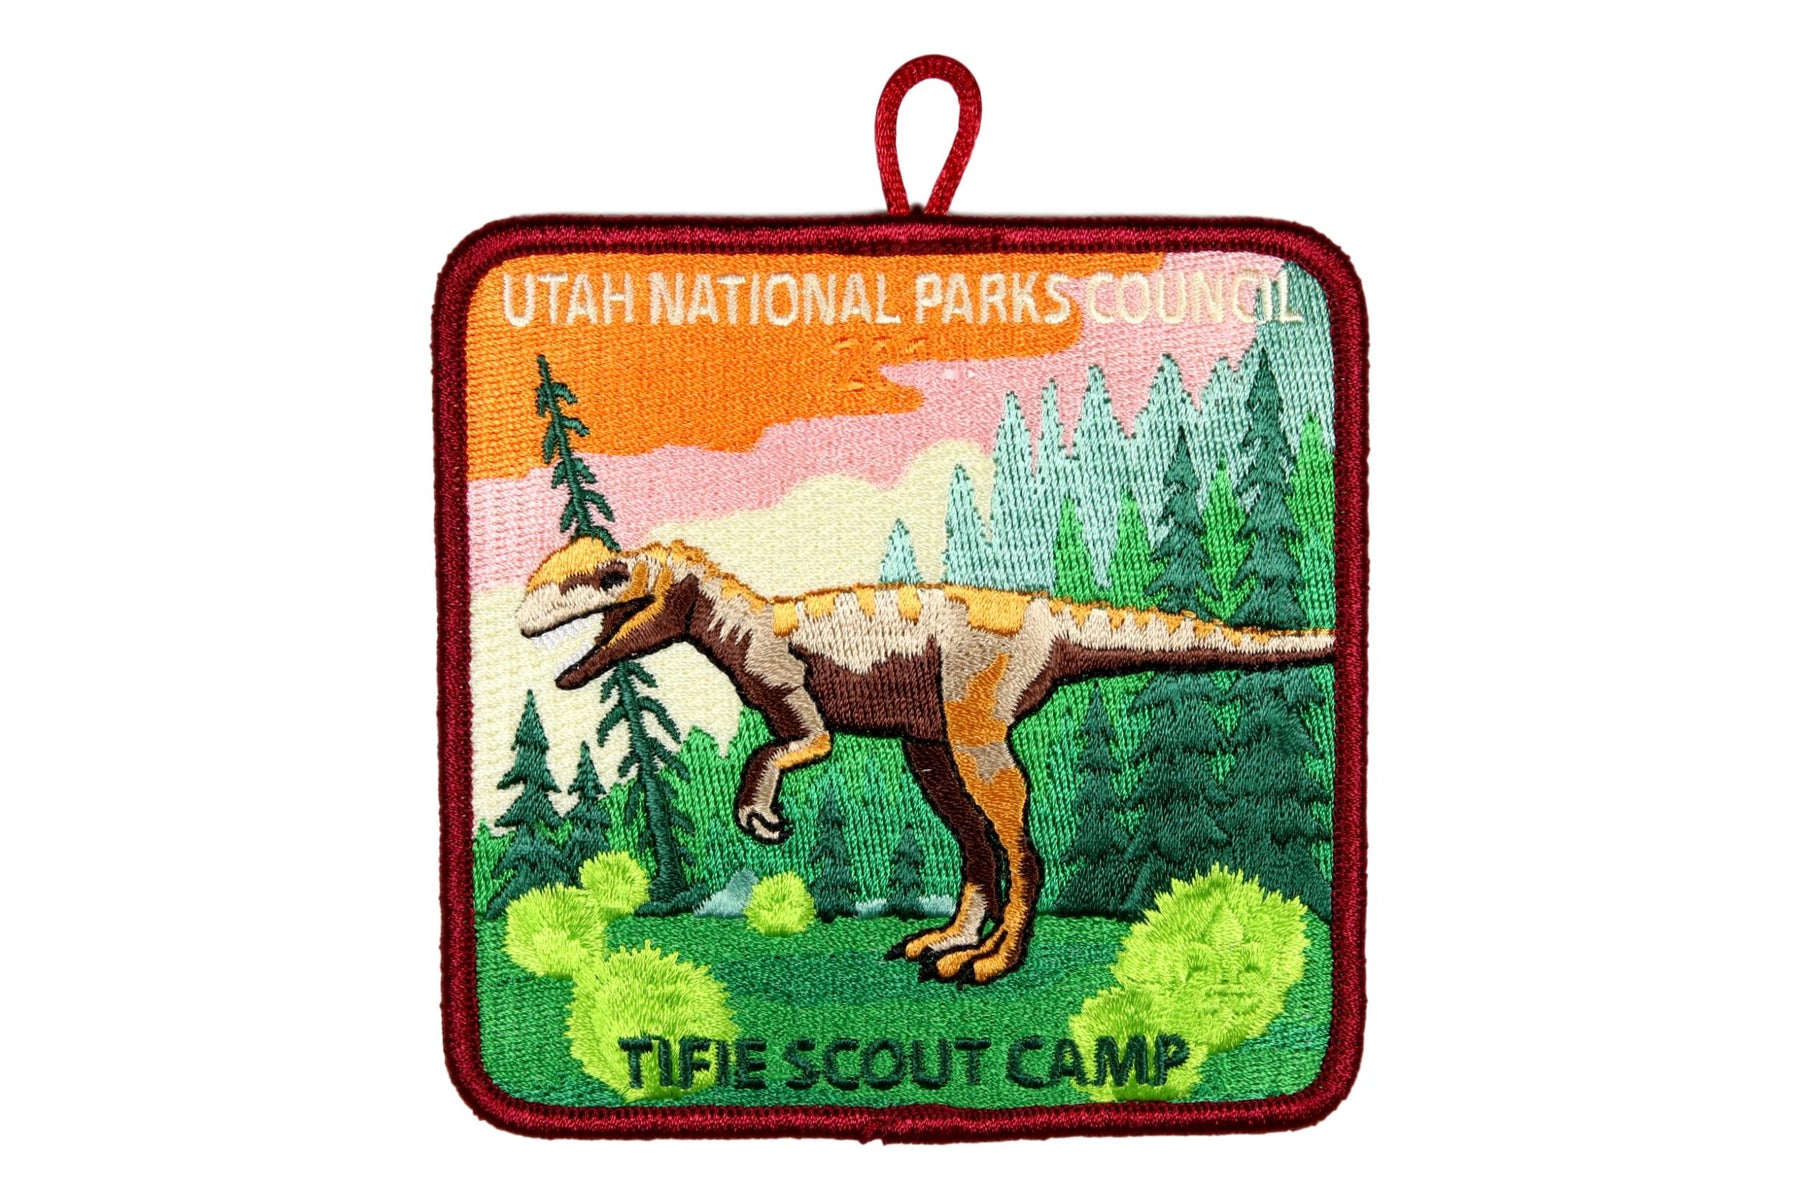 Tifie Scout Camp Patch 2014